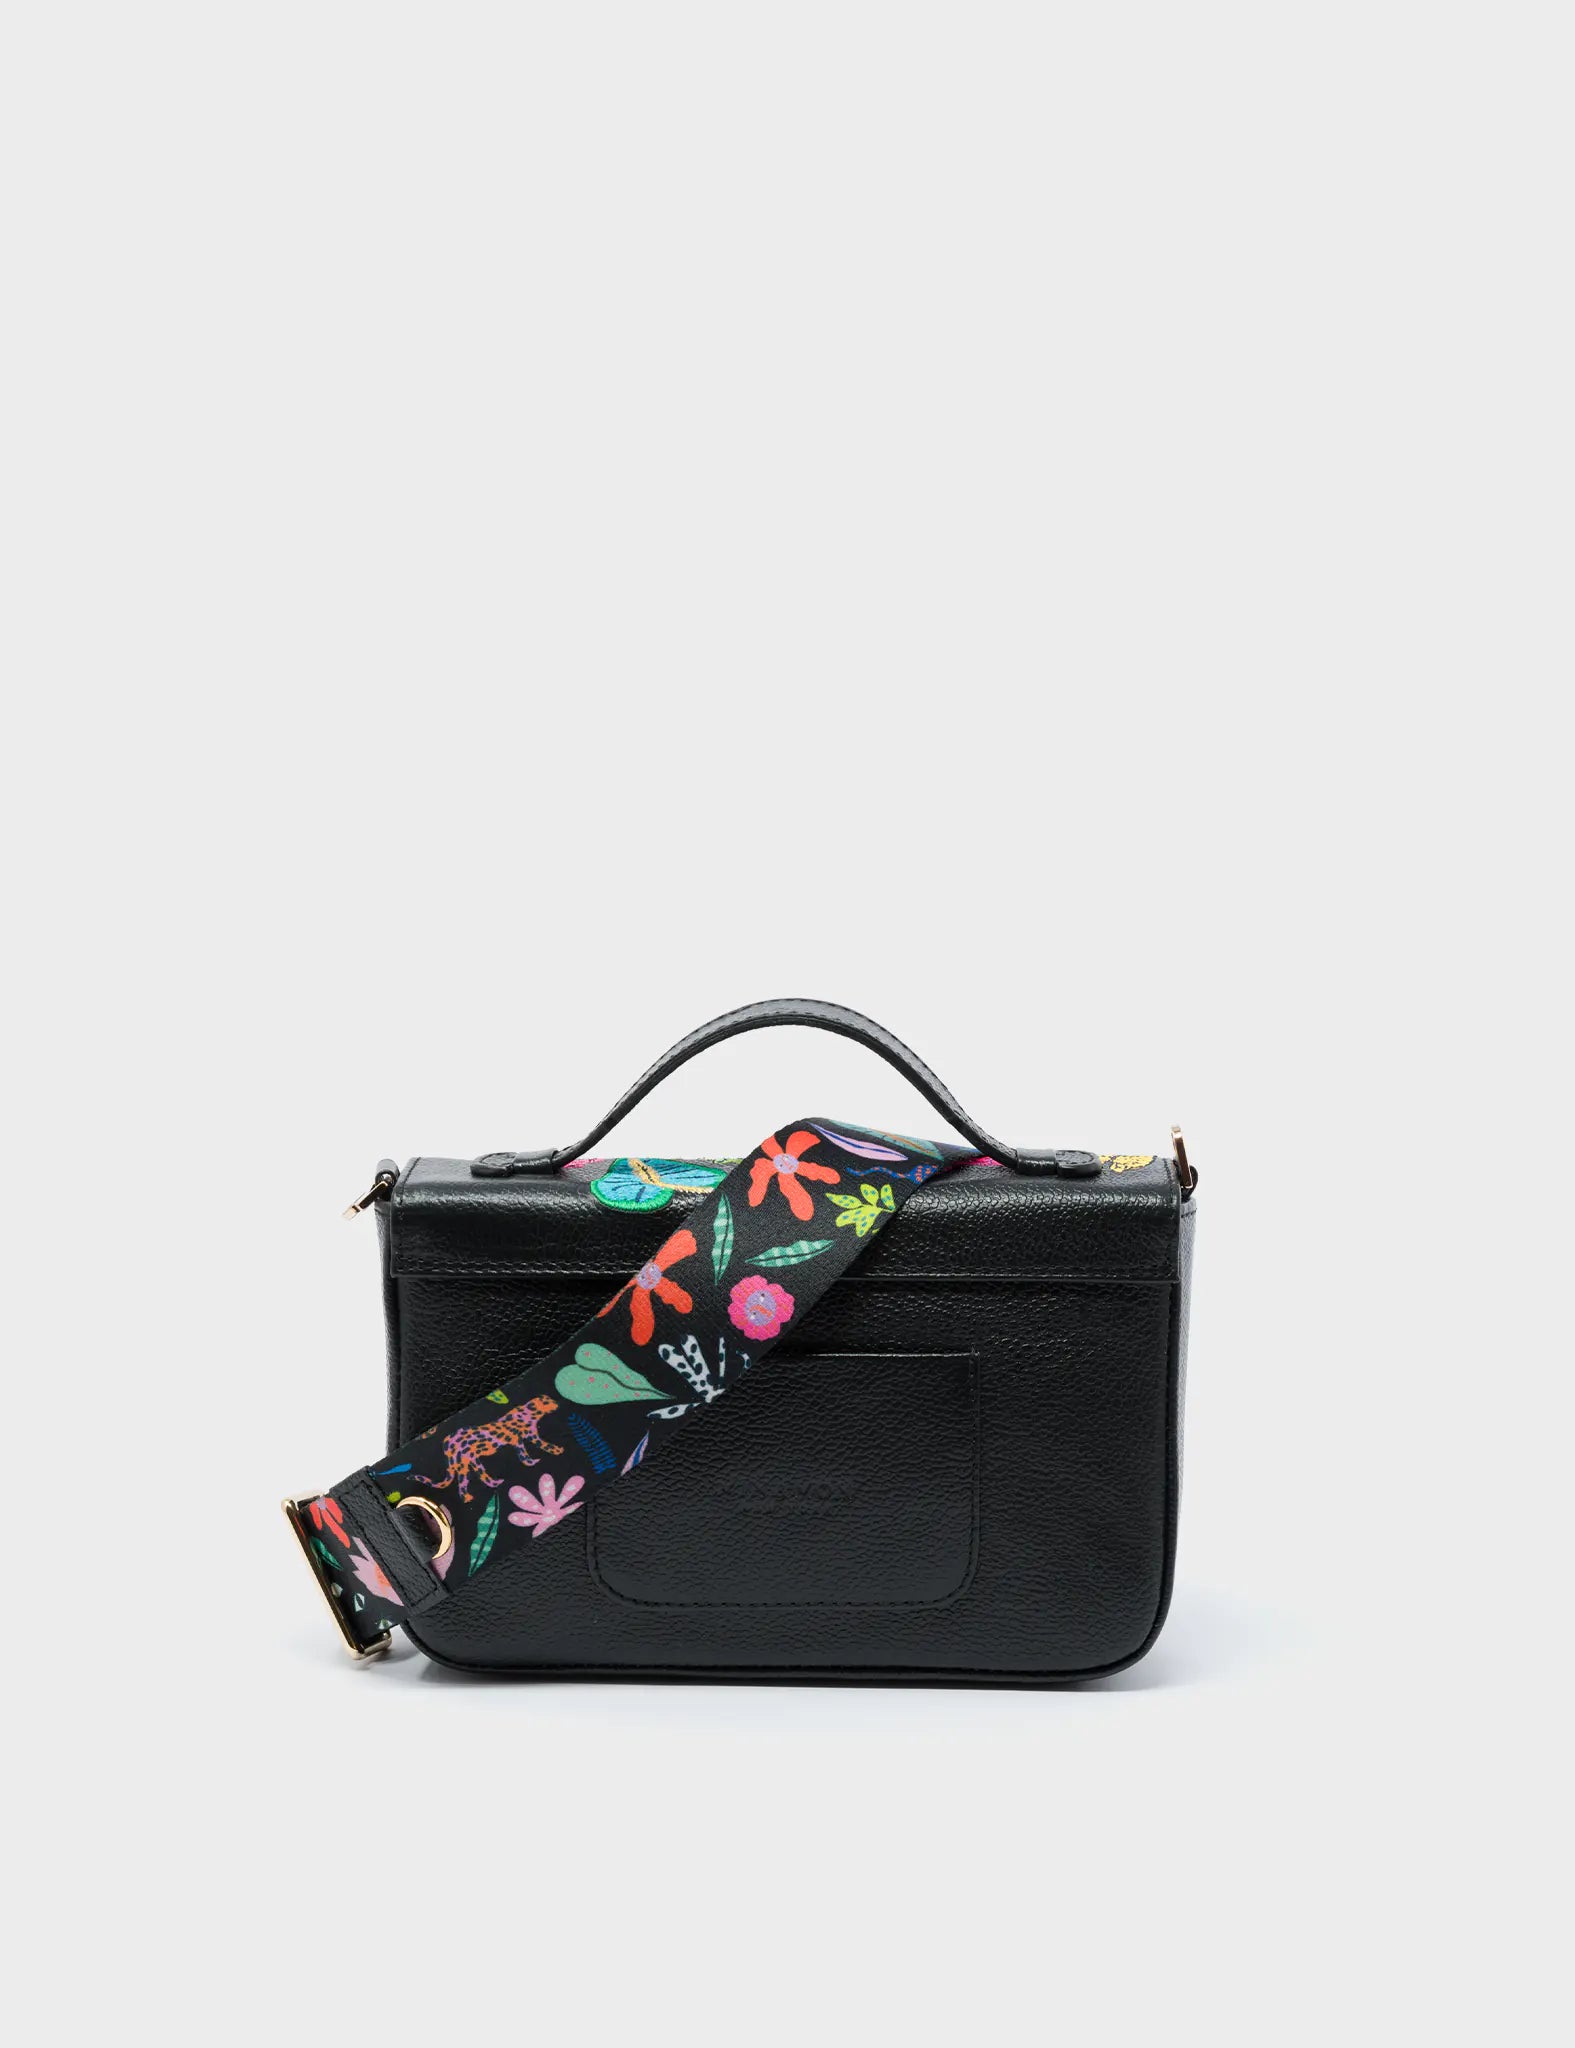 Amantis Cameo Black Leather Crossbody Mini Handbag - El Trópico Embroidery Design - Back 